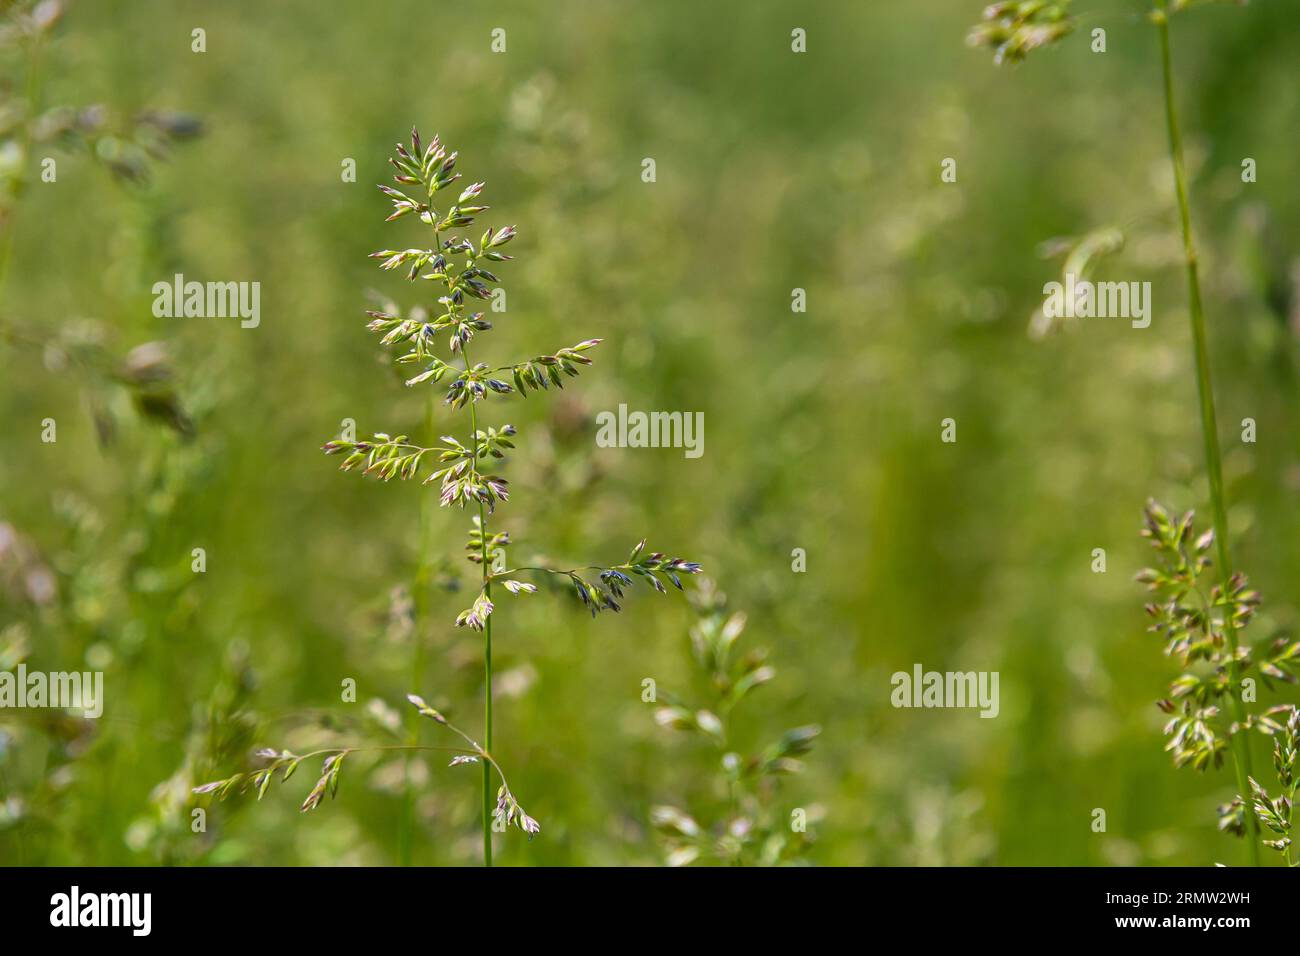 Prairie d'herbe de prairie avec les sommets des panicules de stèle. Poa pratensis herbe verte de prairie européenne. Banque D'Images